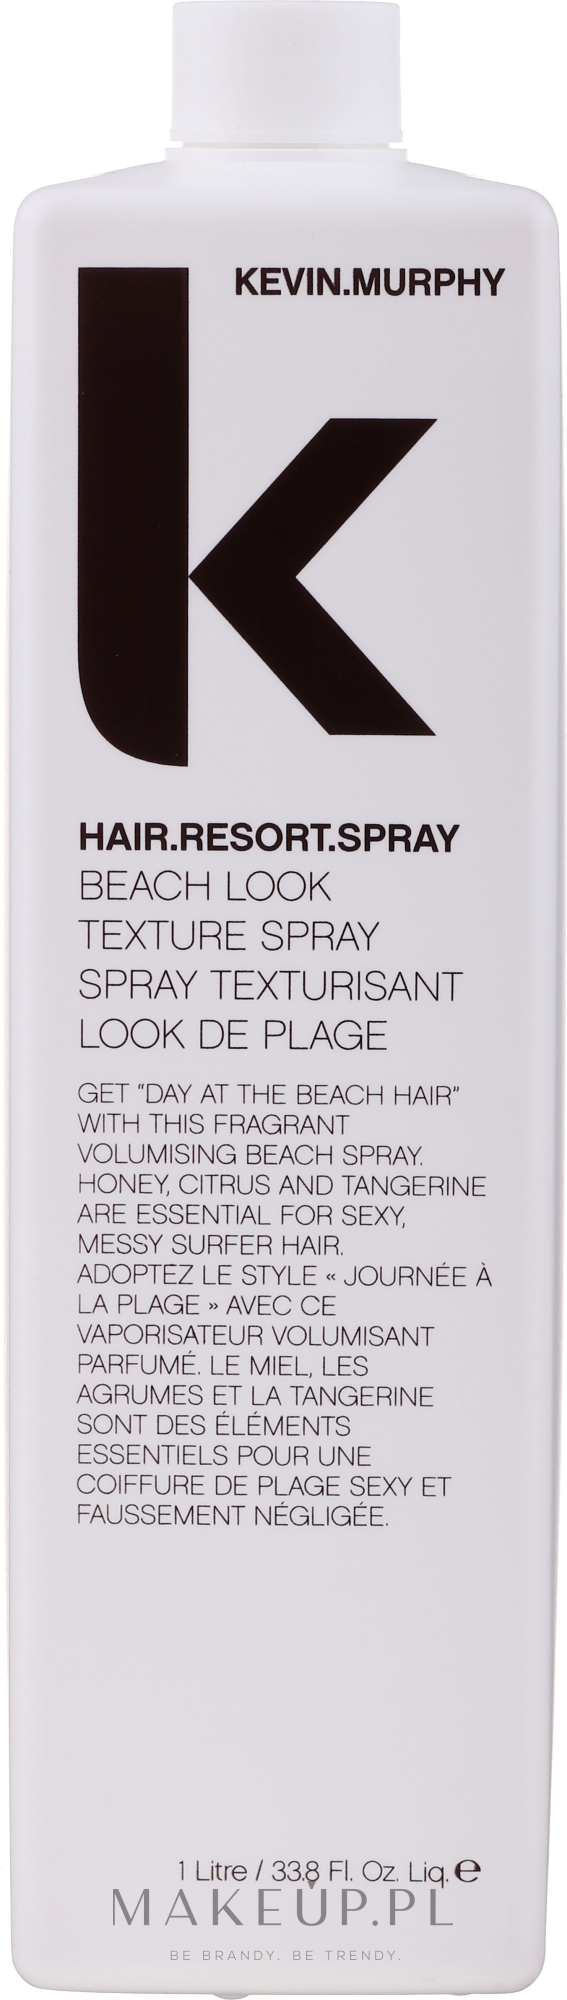 Spray do tworzenia efektu plażowej fryzury - Kevin.Murphy Hair.Resort.Spray — Zdjęcie 1000 ml